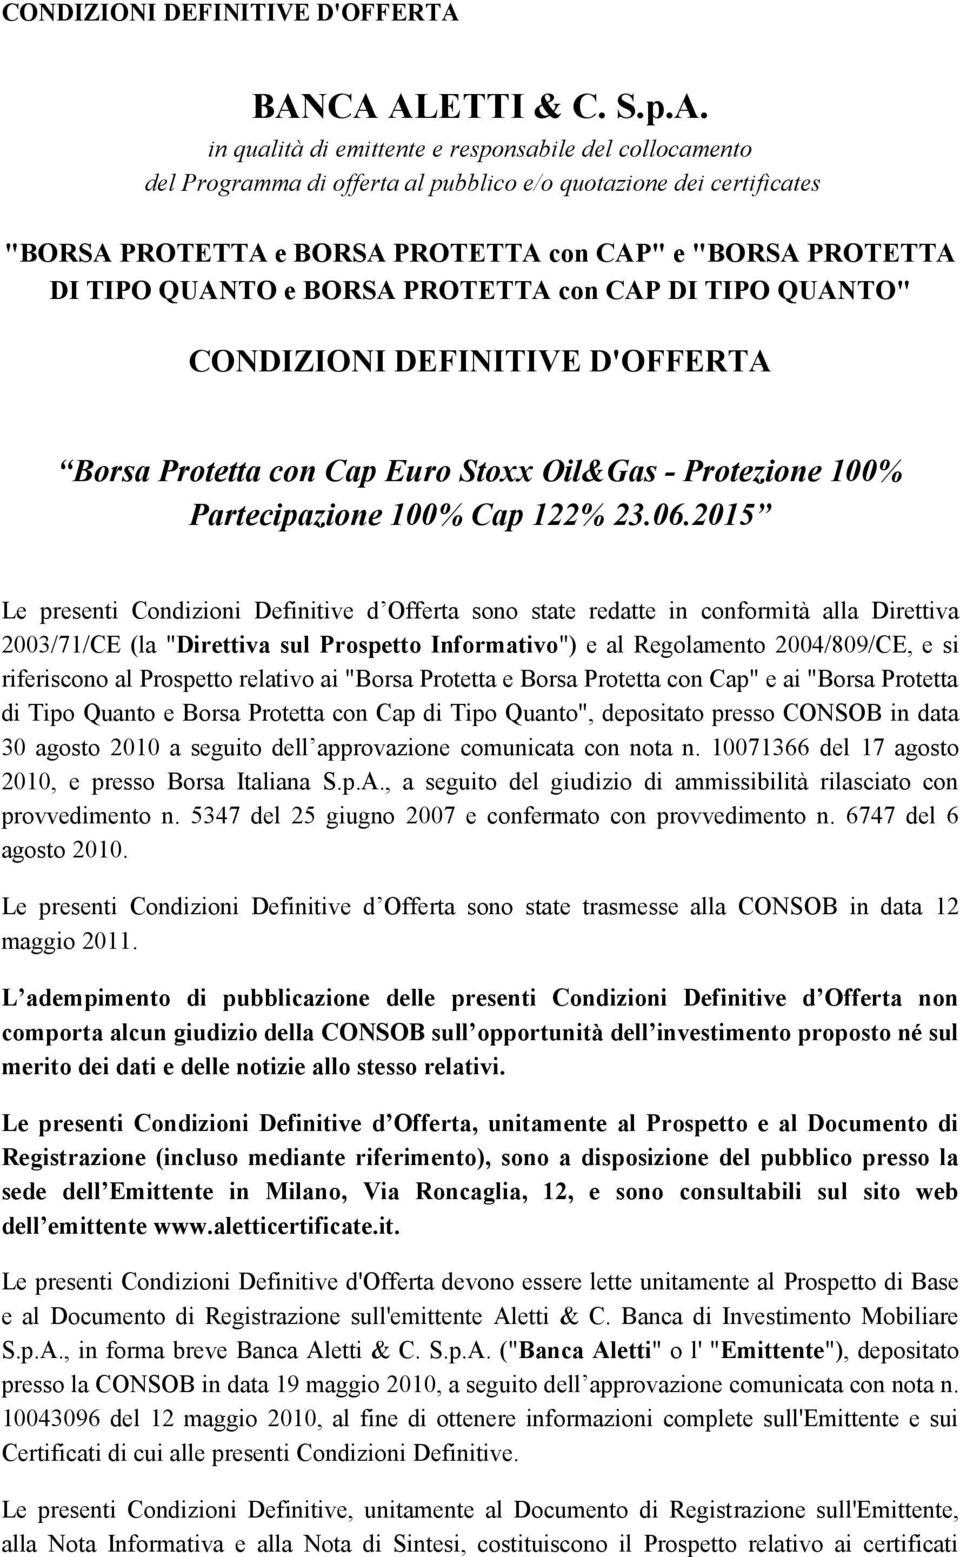 "BORSA PROTETTA DI TIPO QUANTO e BORSA PROTETTA con CAP DI TIPO QUANTO" Borsa Protetta con Cap Euro Stoxx Oil&Gas - Protezione 100% Partecipazione 100% Cap 122% 23.06.